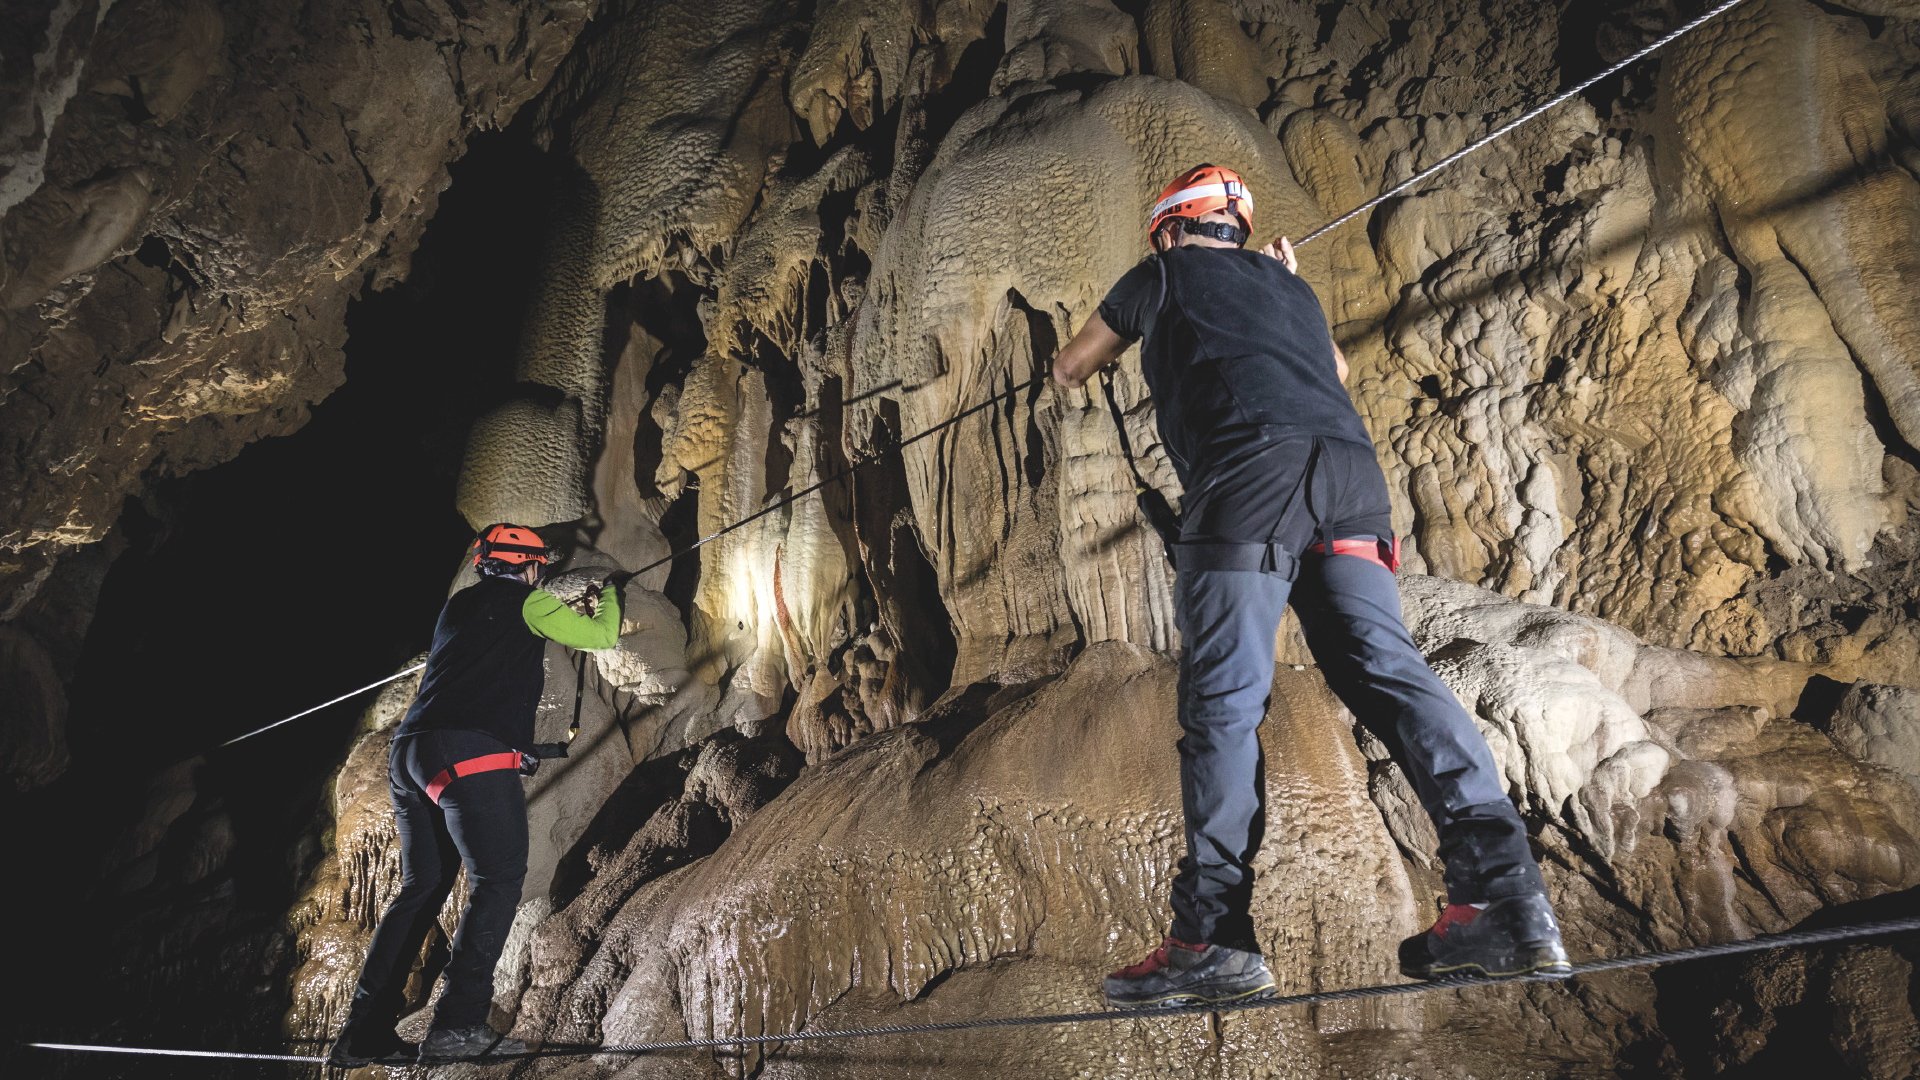 La speleo-avventura, un'escursione guidata negli splendidi ambienti della grotta di Equi Terme